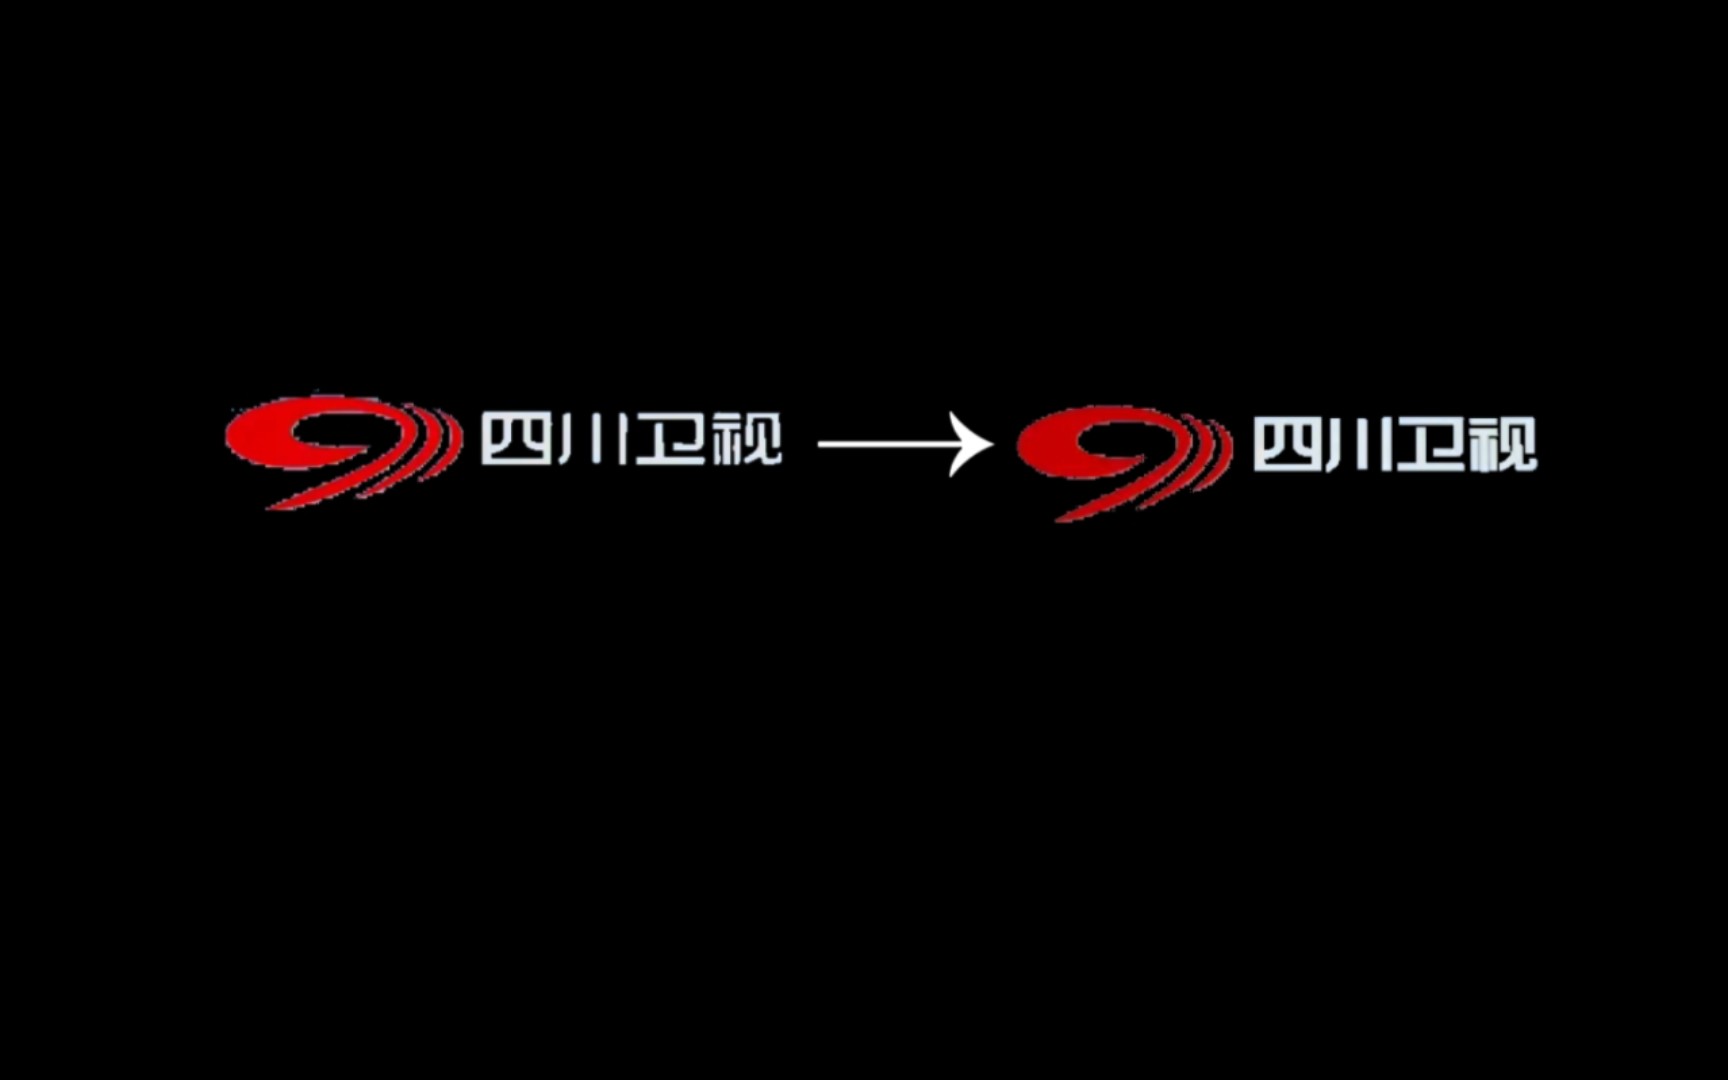 四川卫视logo图片